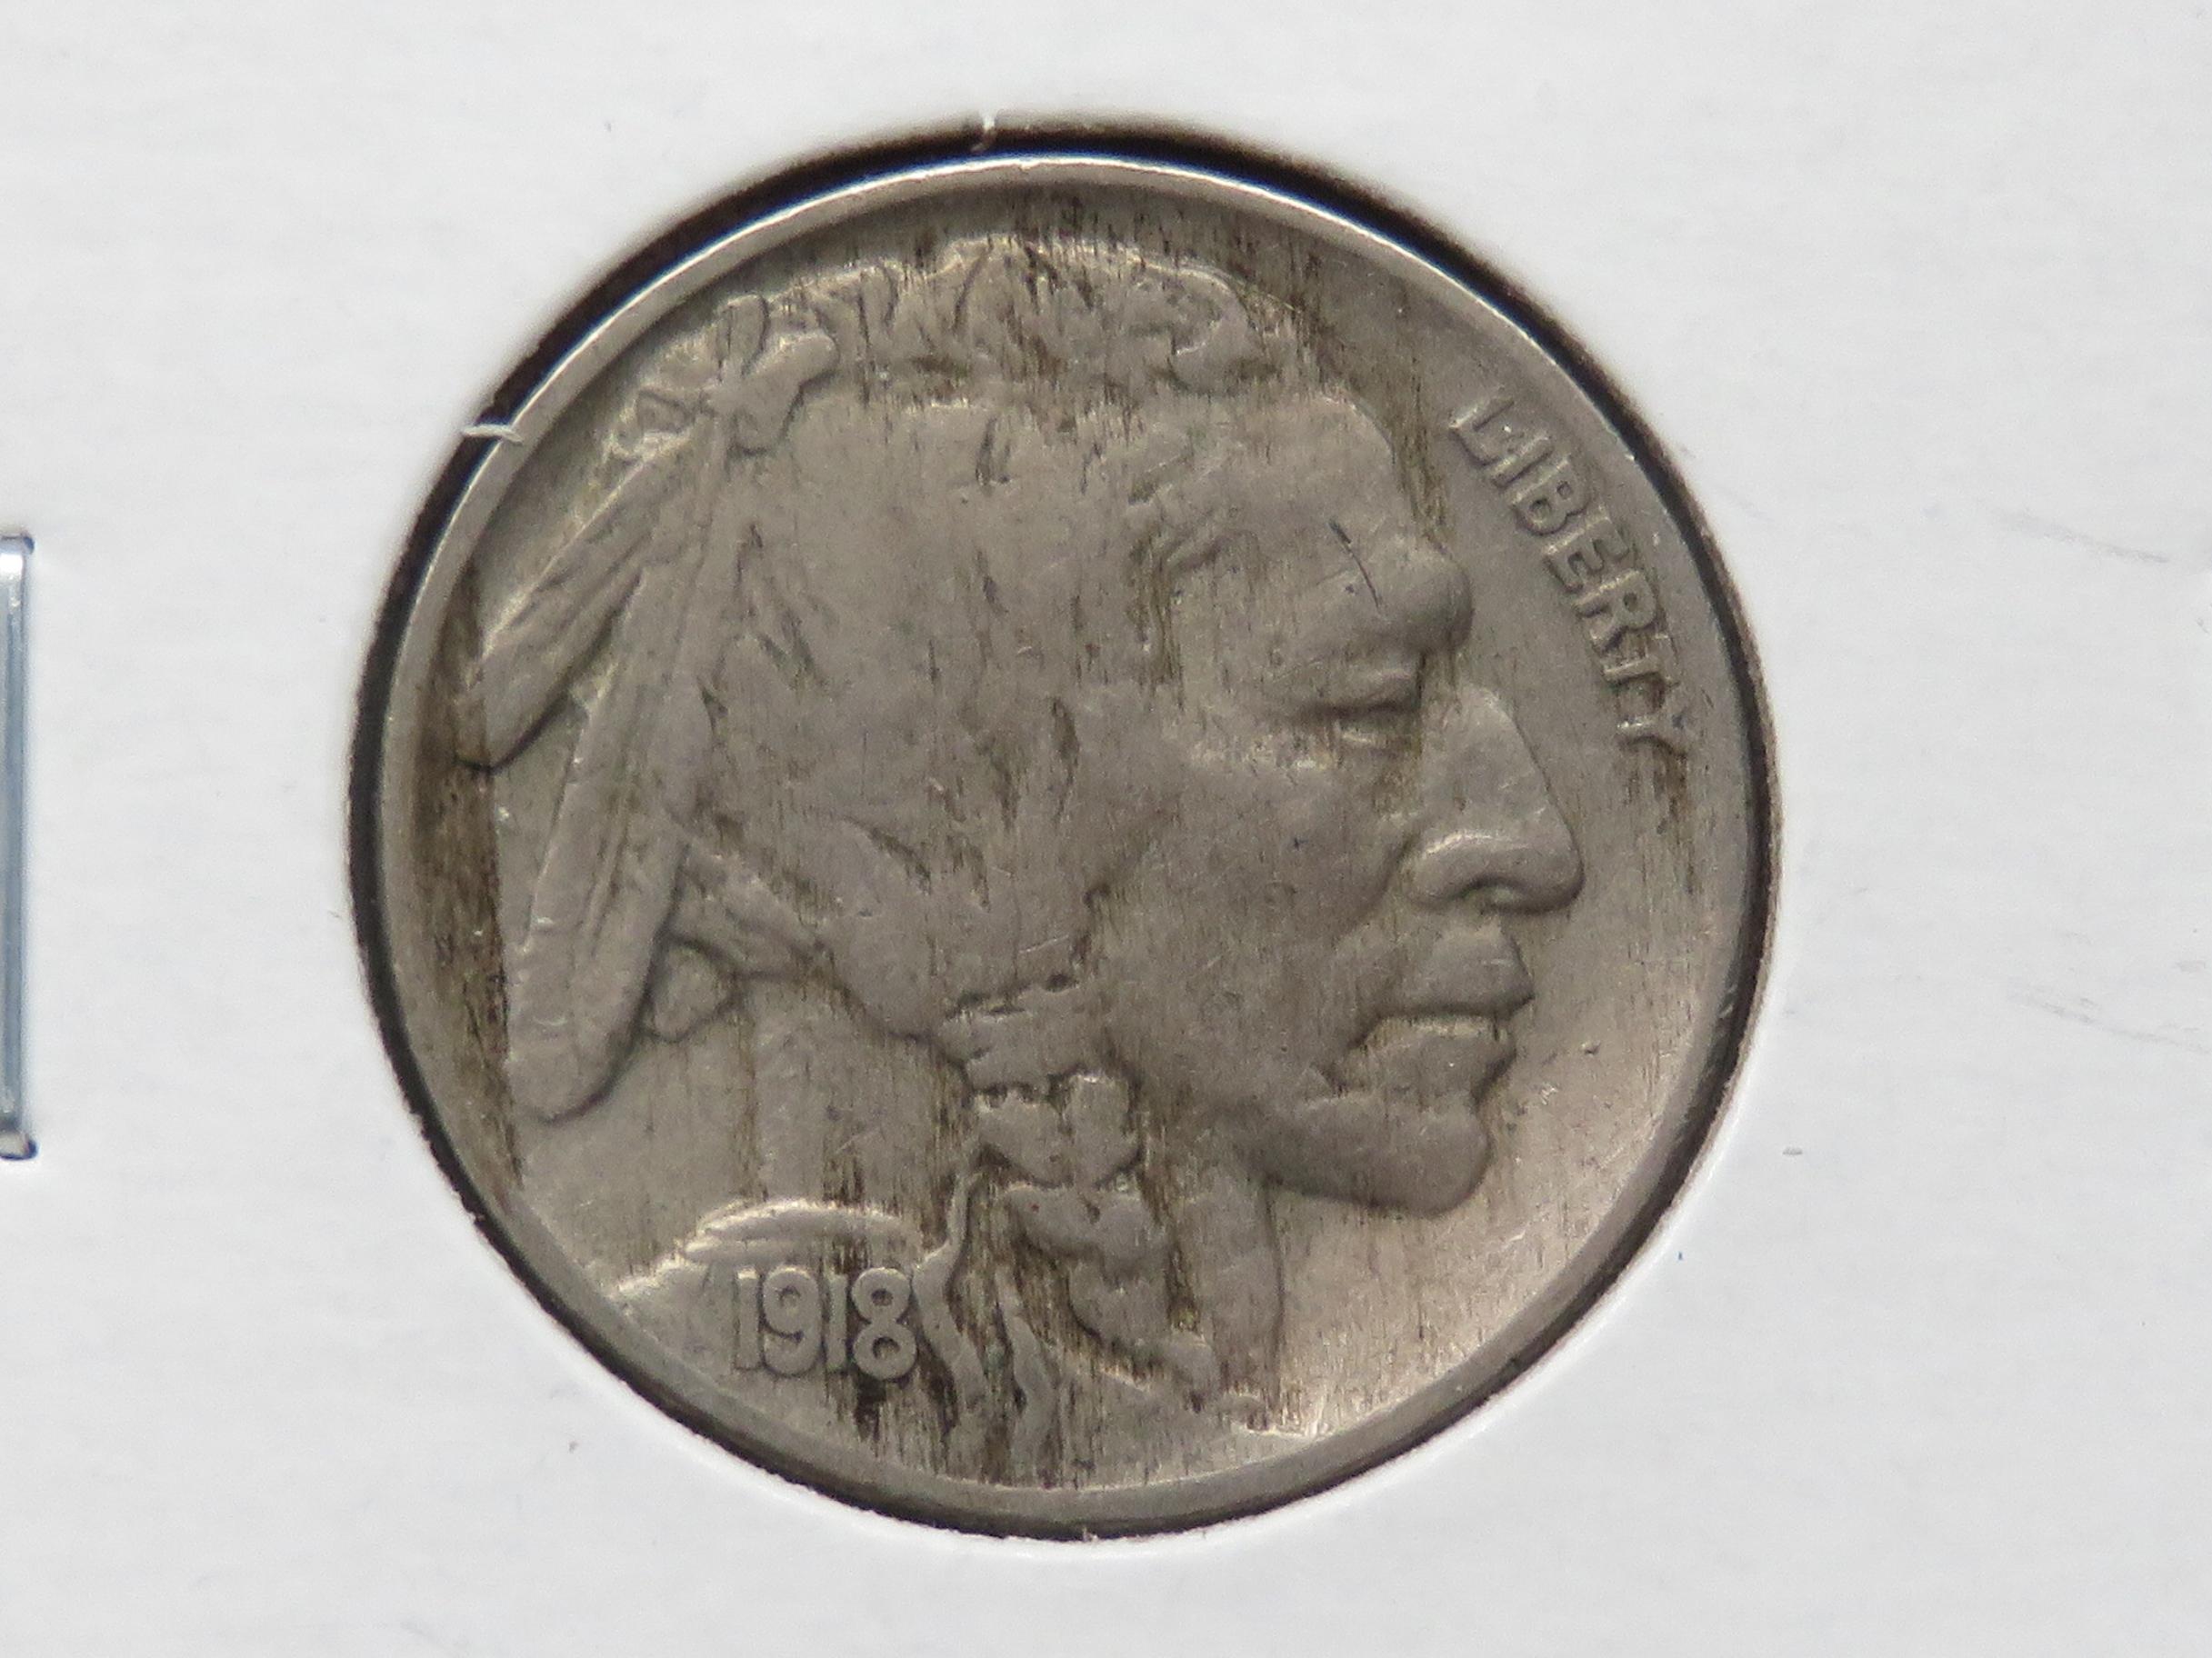 3 Buffalo Nickels: 1917D VG, 1917S G, 1918 VF